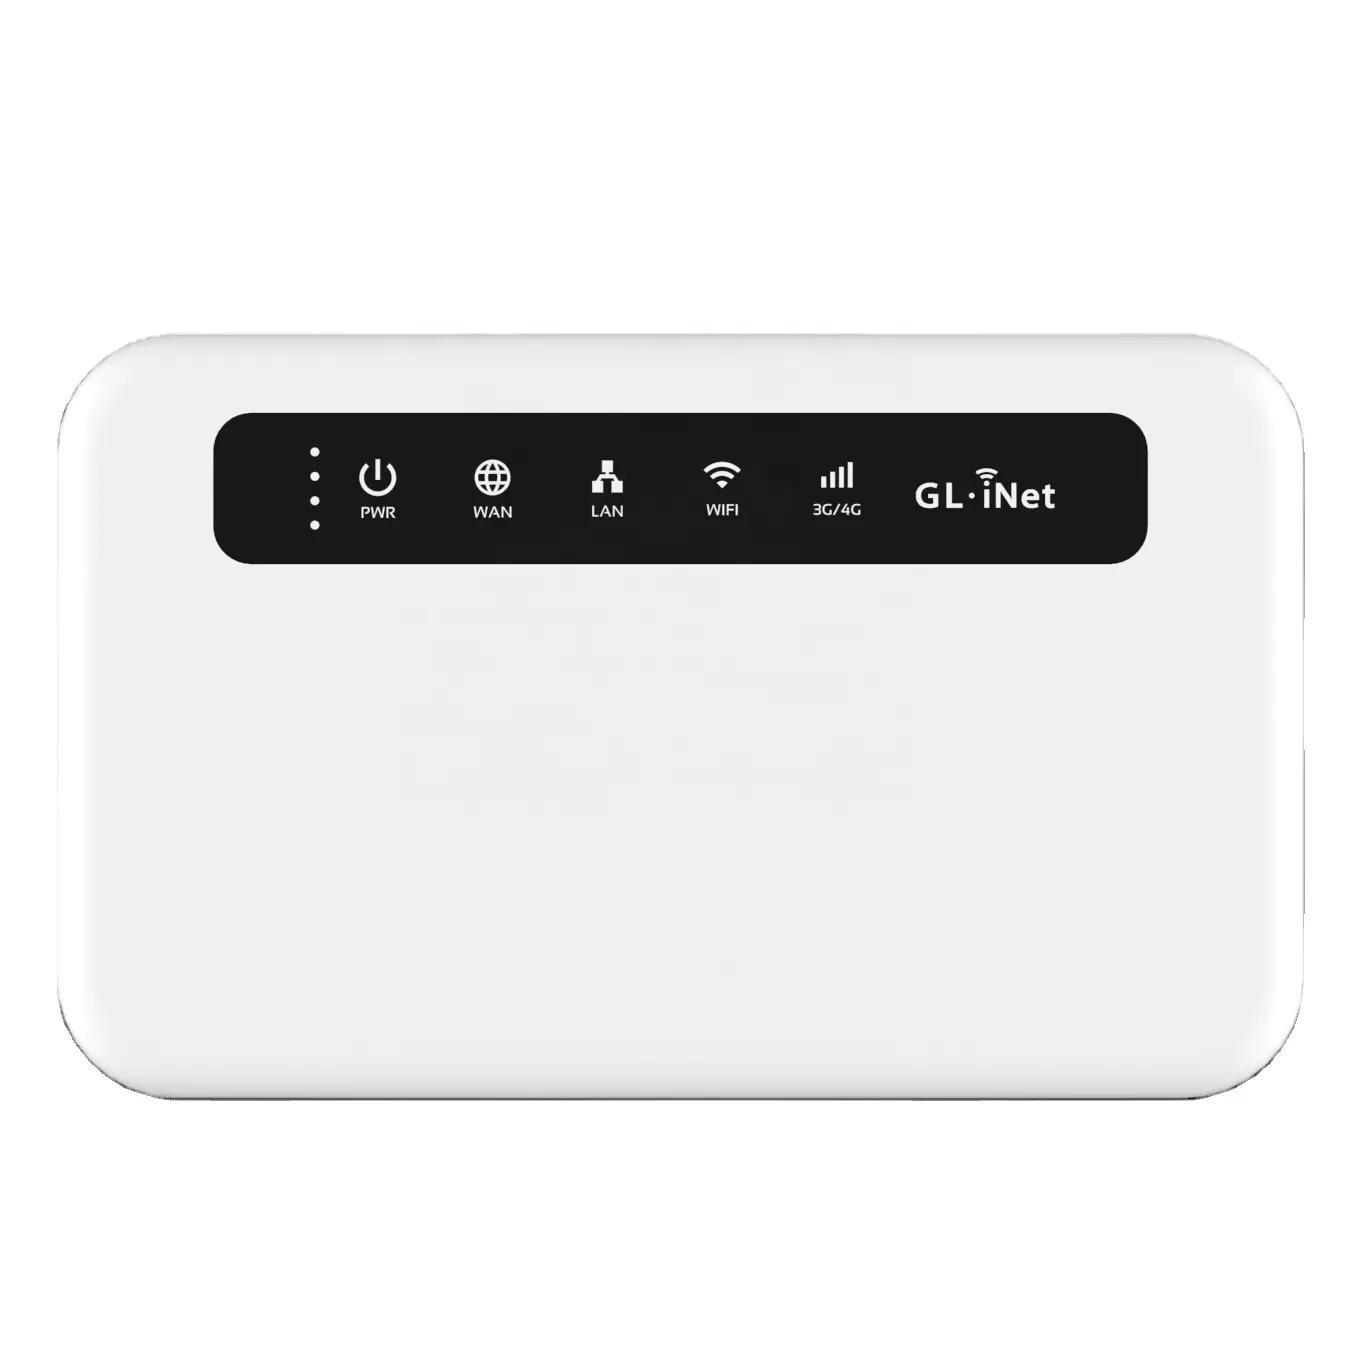 GL-XE300 routeur sans fil 4G LTE VPN OPENWRT carte sim 4G passerelle IoT portable version mondiale routeur avec batterie intégrée